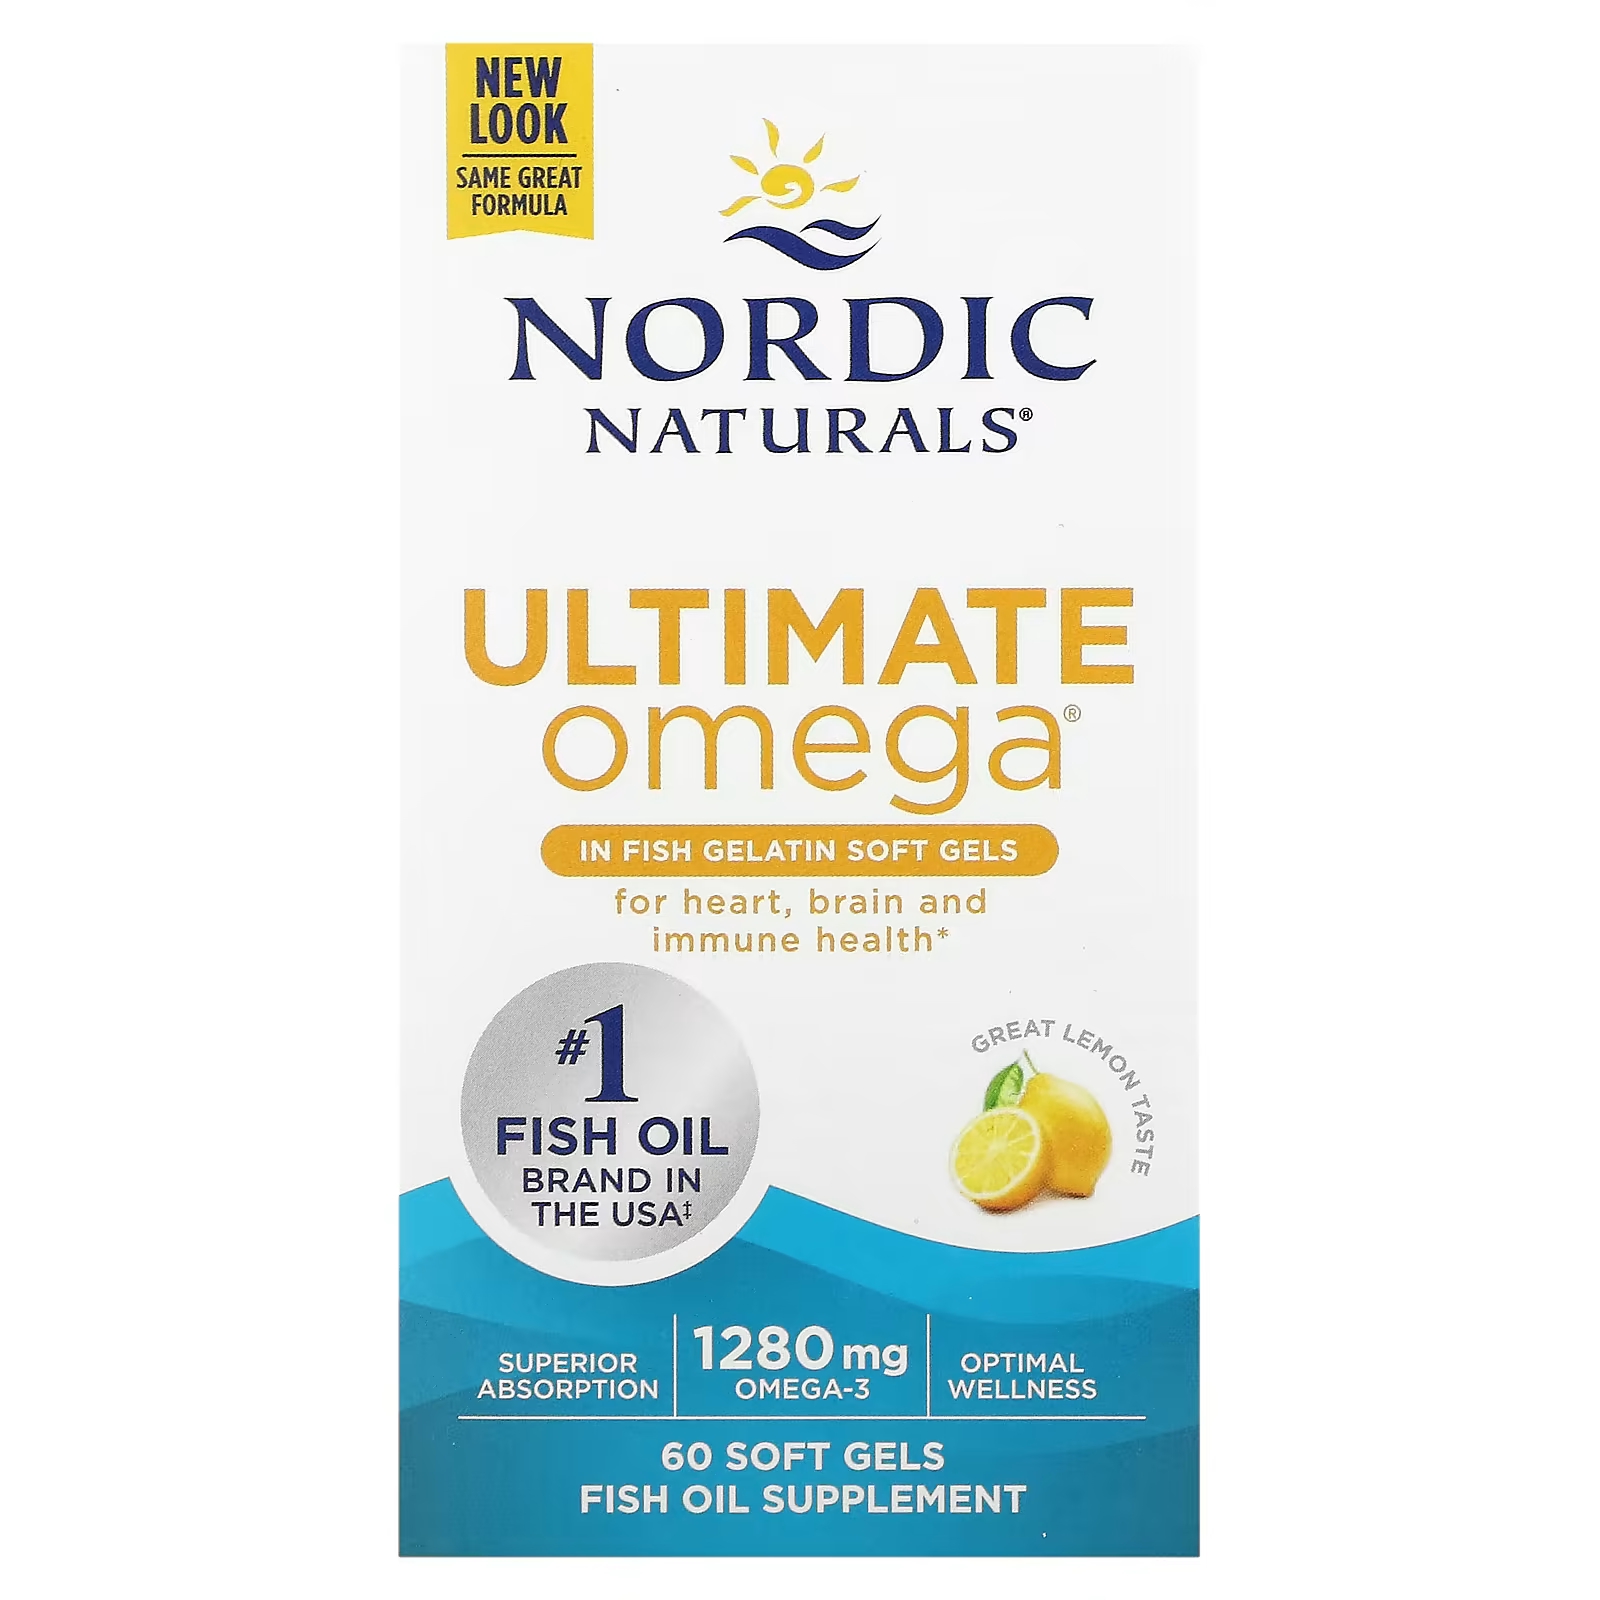 Nordic Naturals Ultimate Omega Lemon 1280 мг 60 мягких капсул из рыбного желатина (640 мг в мягкой капсуле) ultimate omega lemon 1280 мг 60 мягких таблеток 640 мг на мягкую желатиновую таблетку nordic naturals